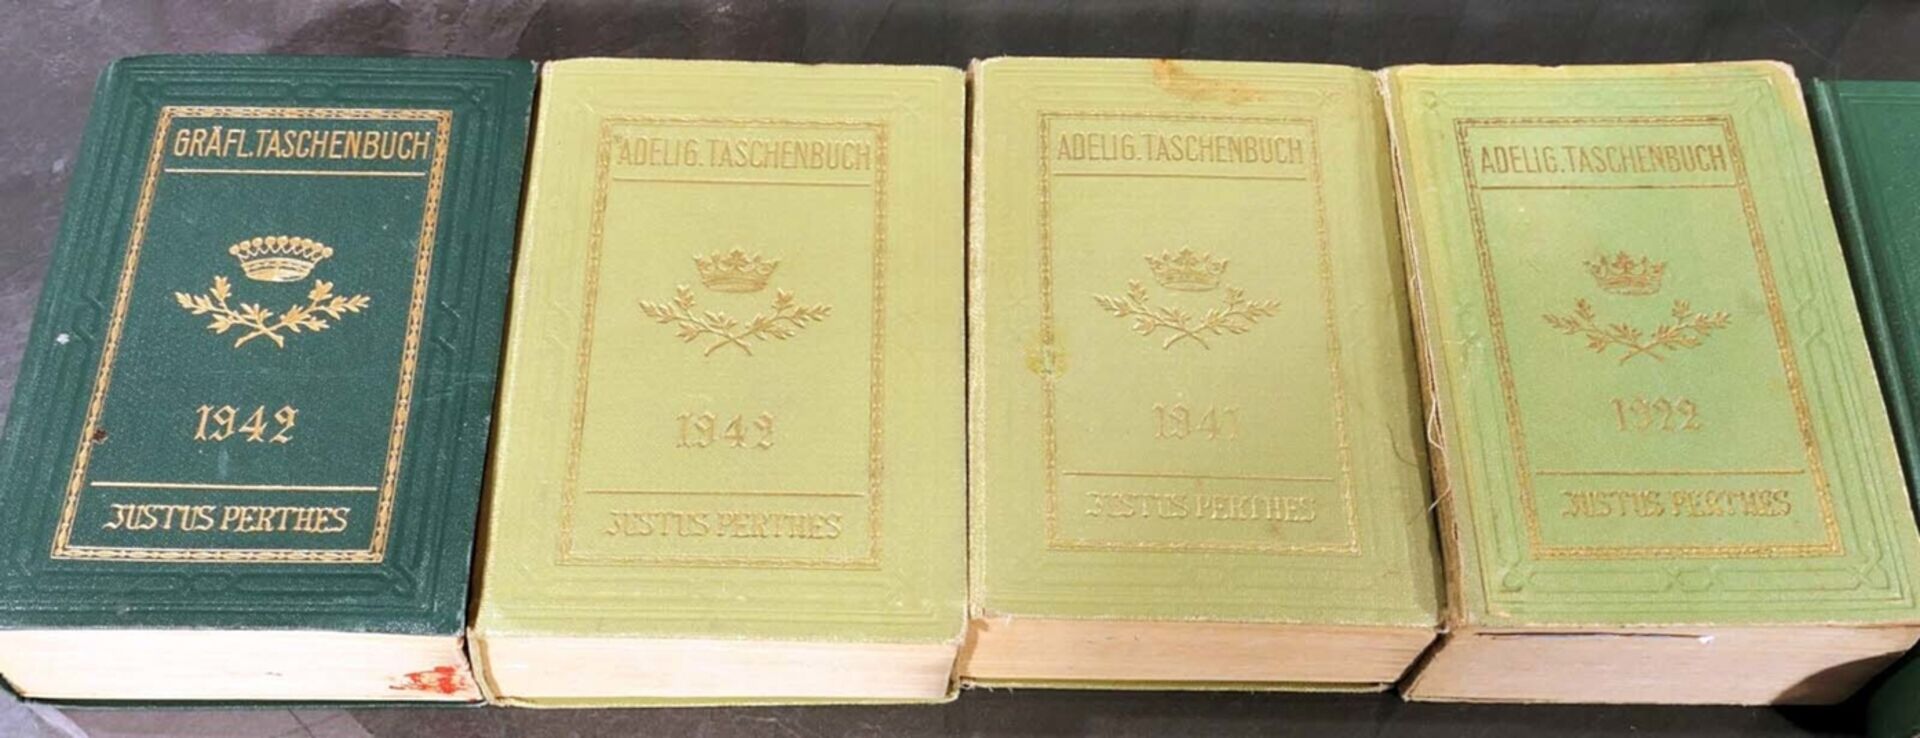 34 tlg. Sammlung versch. Genealogischer Handbücher des Adels des 19. & 20. Jhd., versch. Alter, For - Bild 2 aus 9